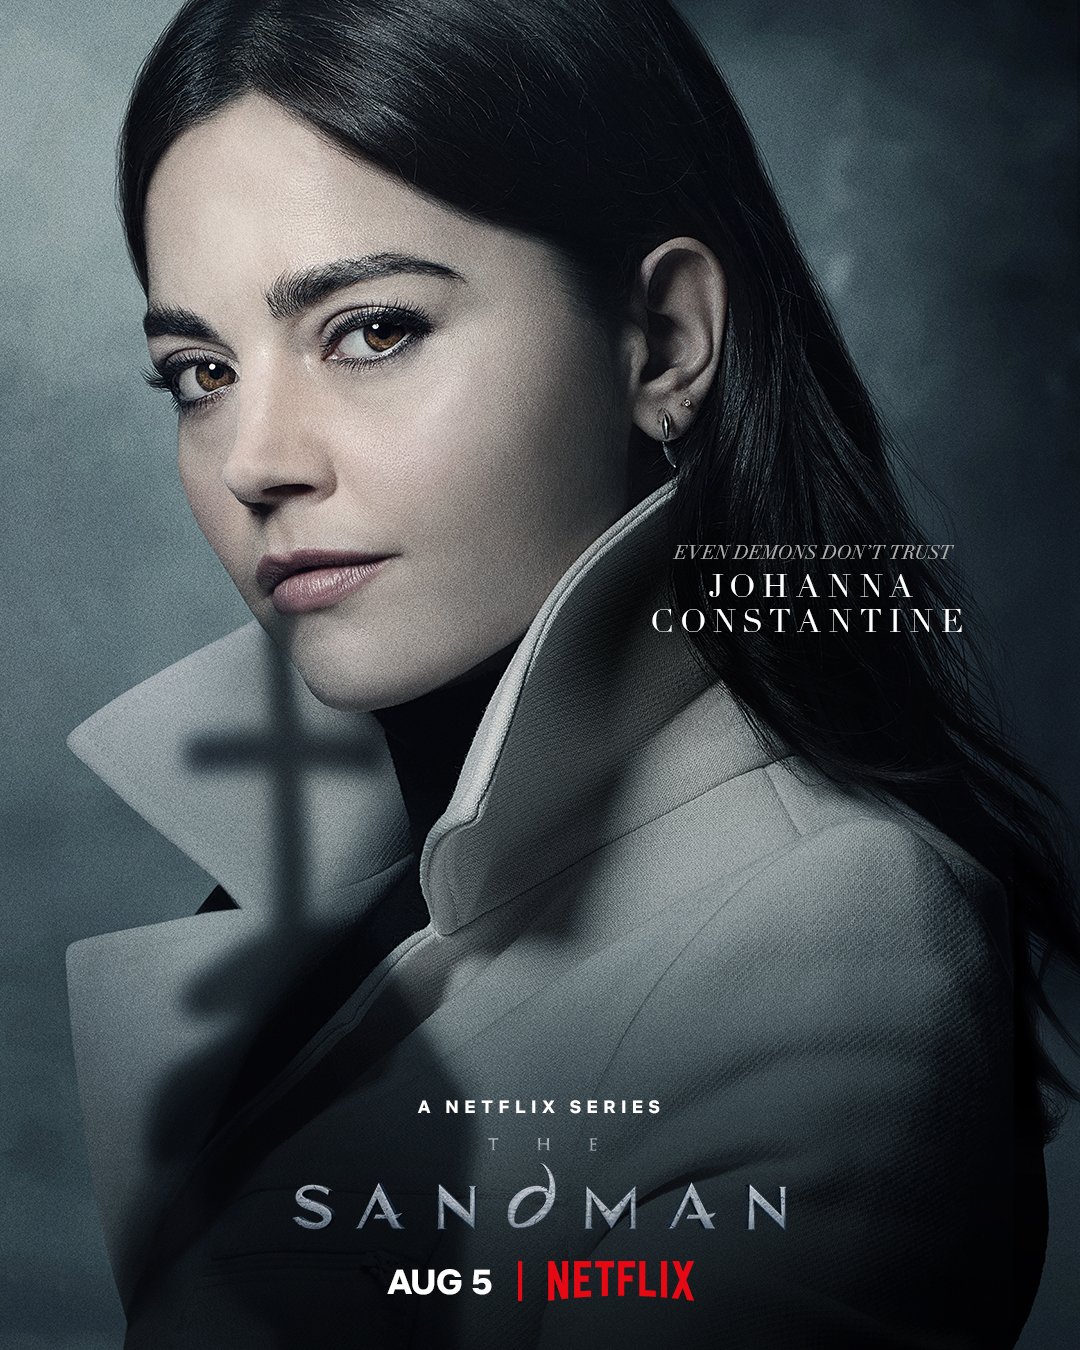 Sandman: série estreia na Netflix; veja detalhes!